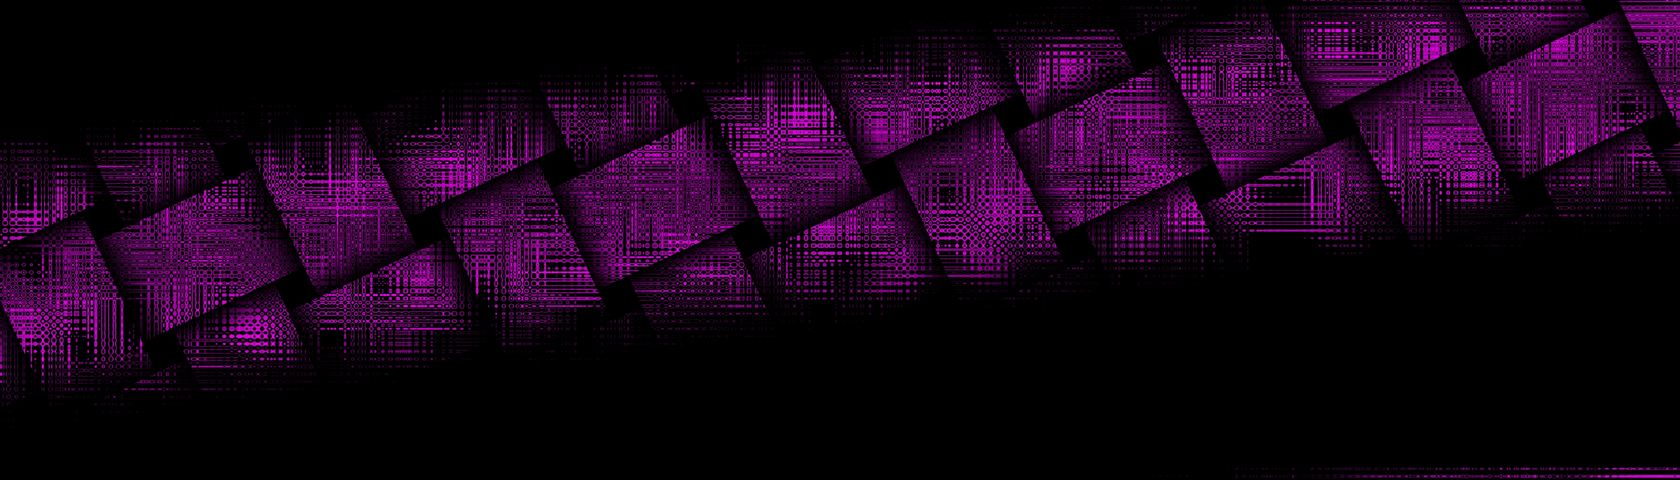 Weaving the Matrix in Purple